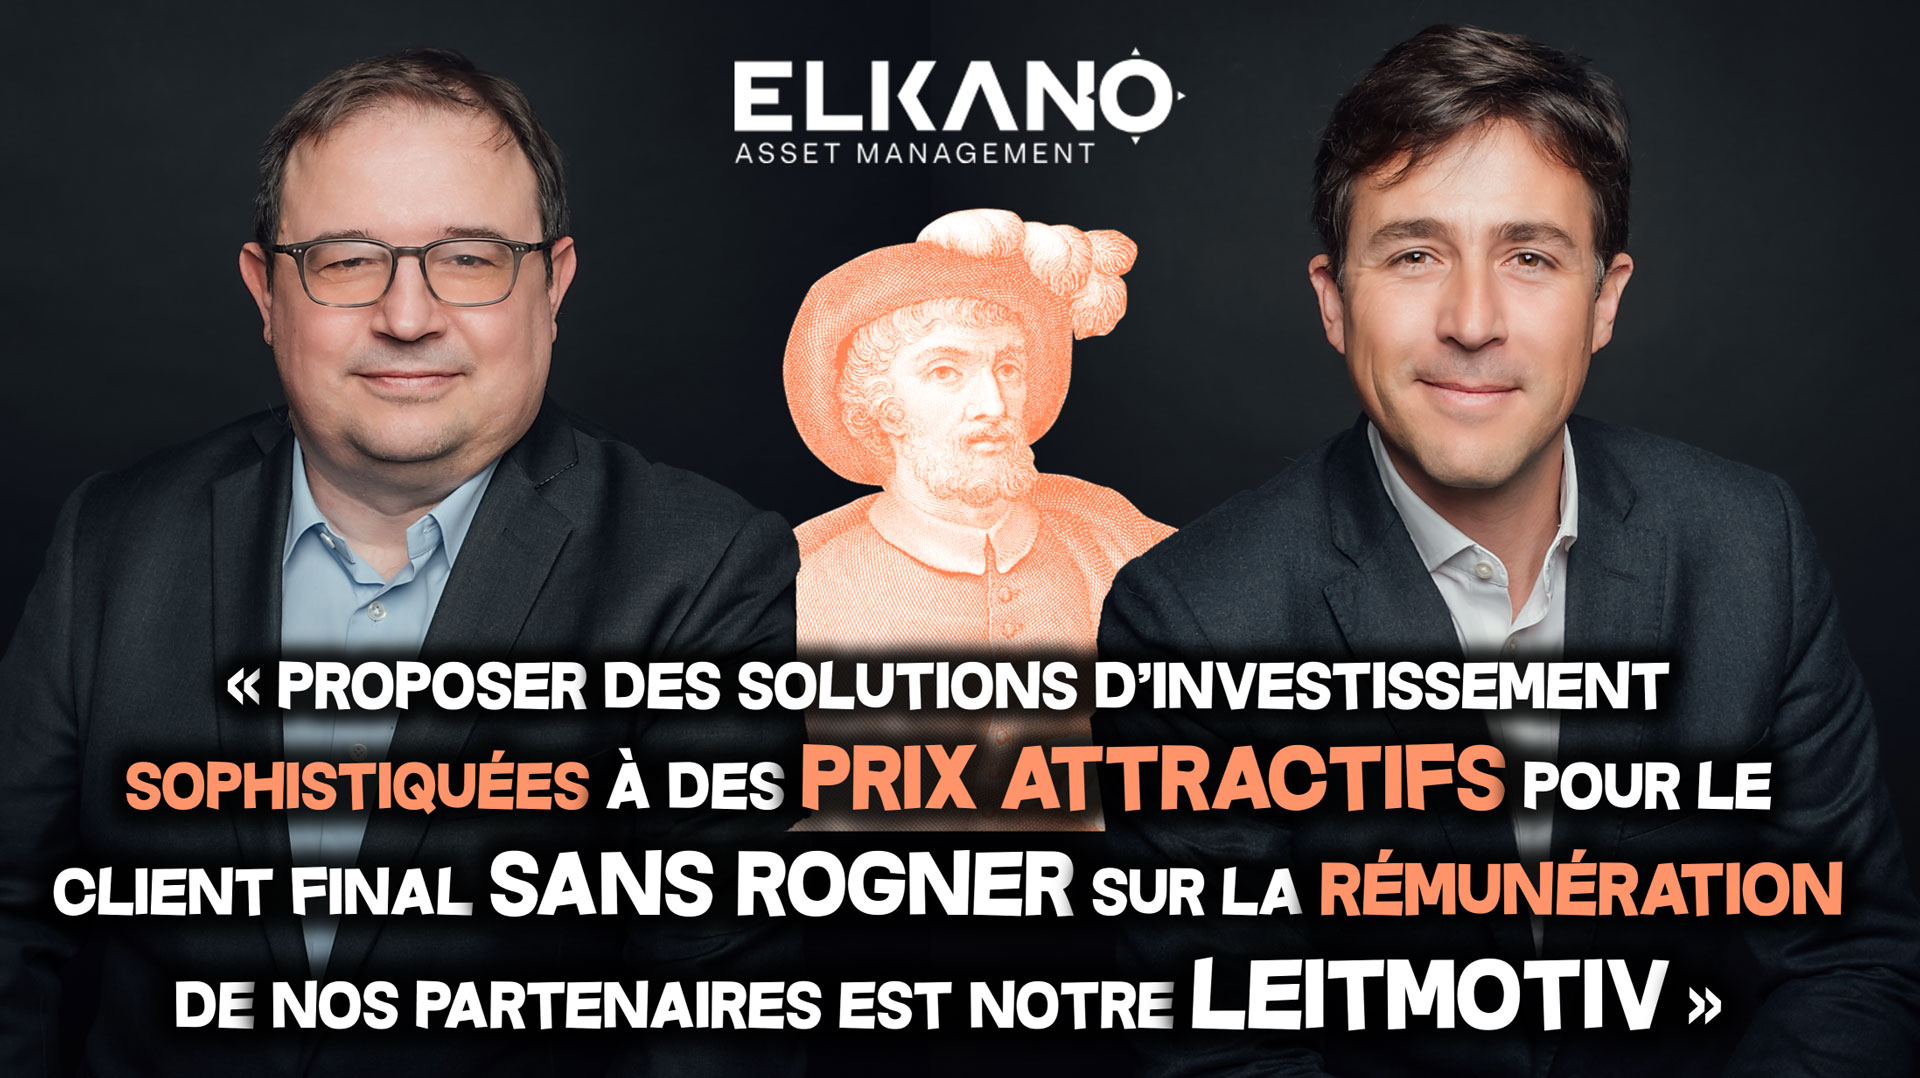 H24 Finance - Elkano AM, la seule société de gestion indépendante française à ne faire que de l’allocation d’actifs financière